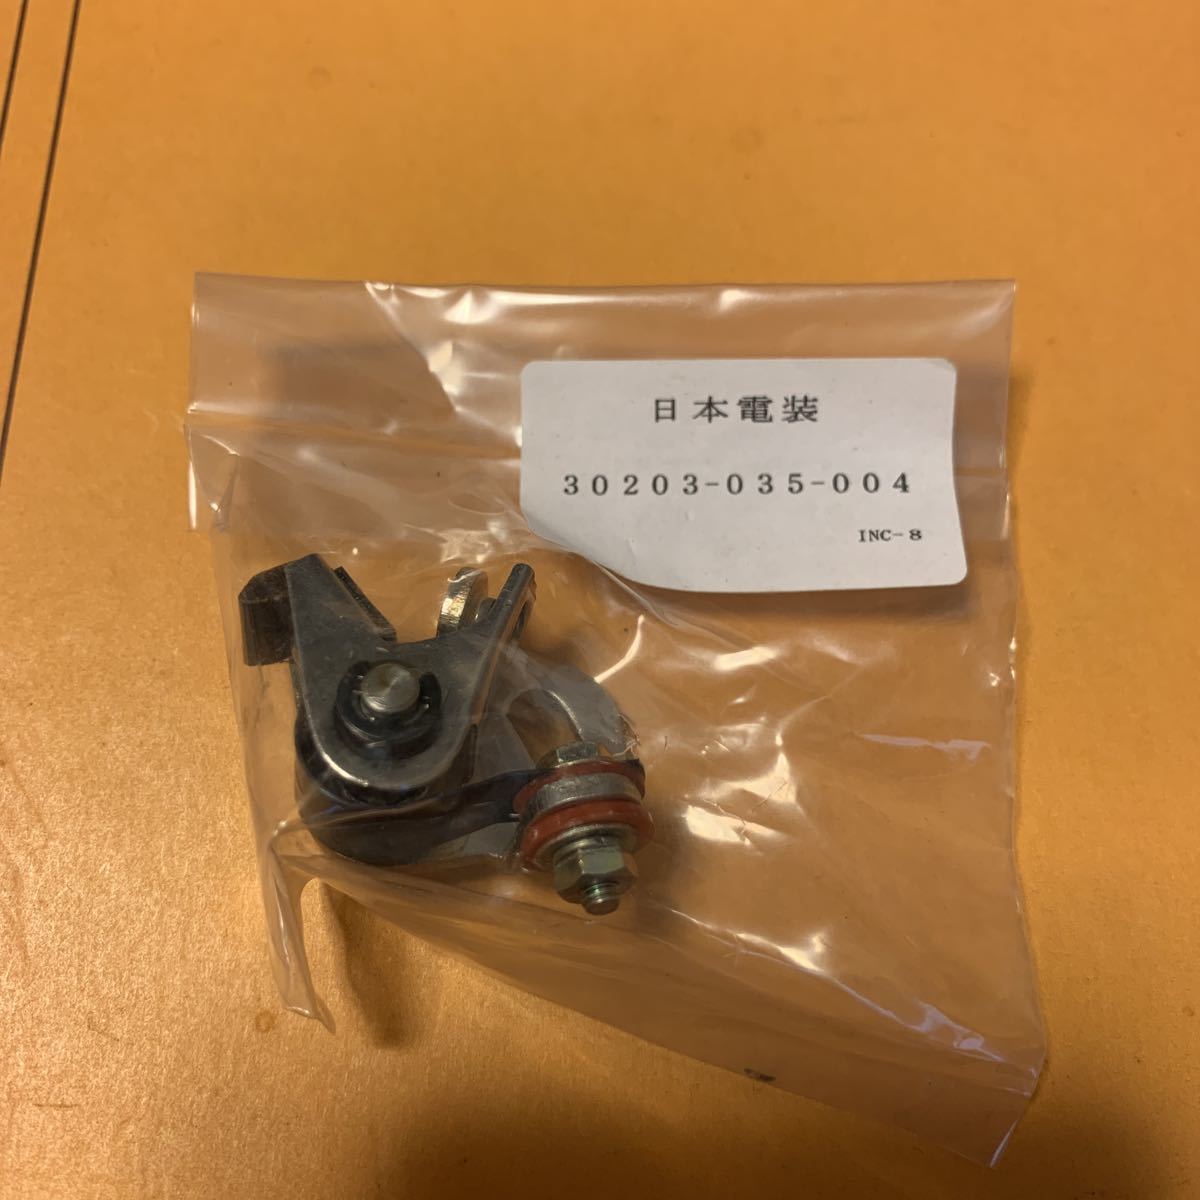 ホンダ OHC カブ モンキー ダックス シャリー  ポイント 日本電装 の画像1